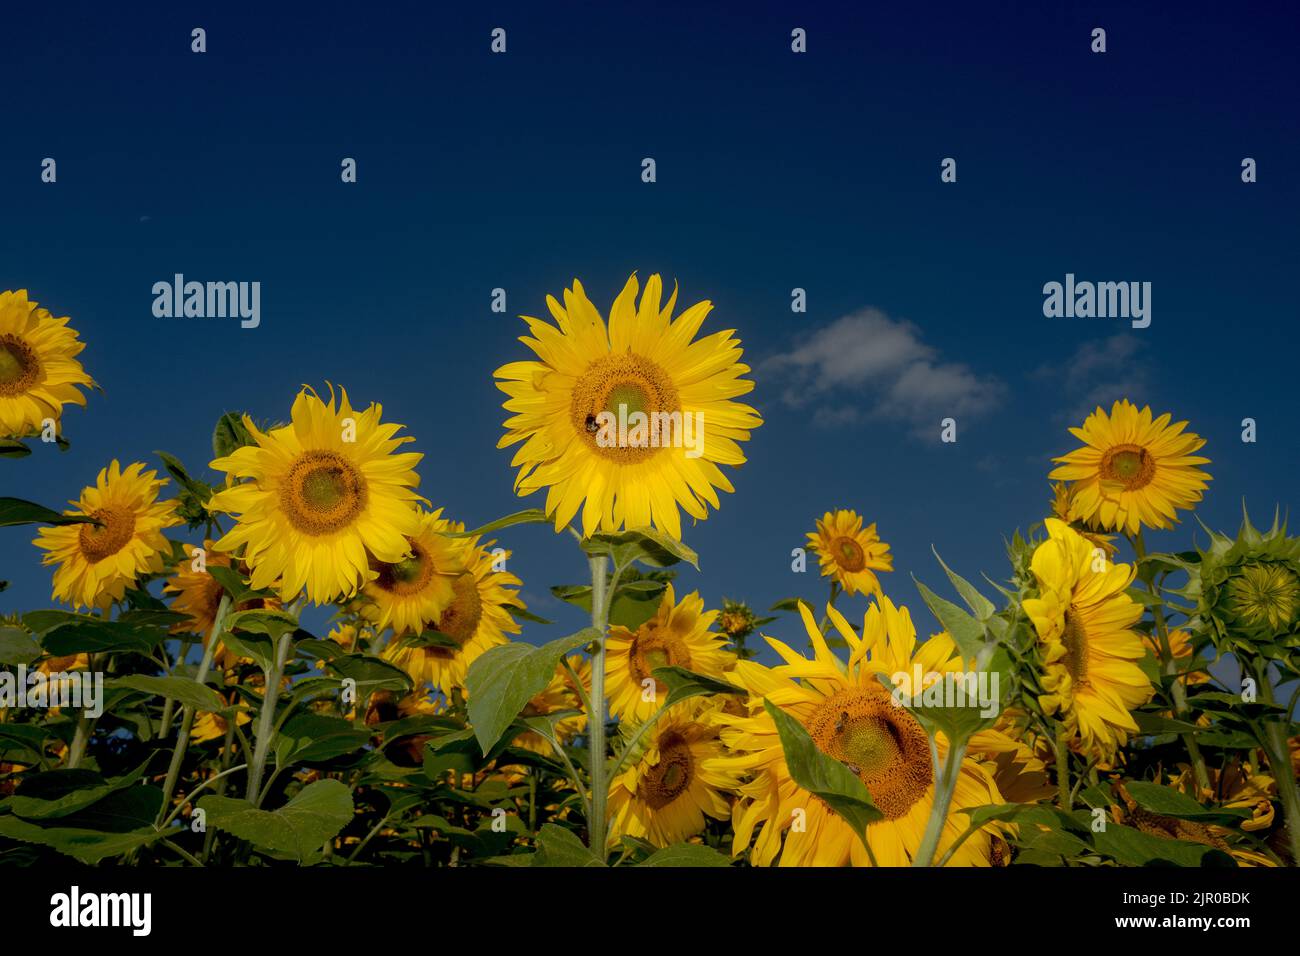 Sunflowers in a field in Warwickshire Stock Photo